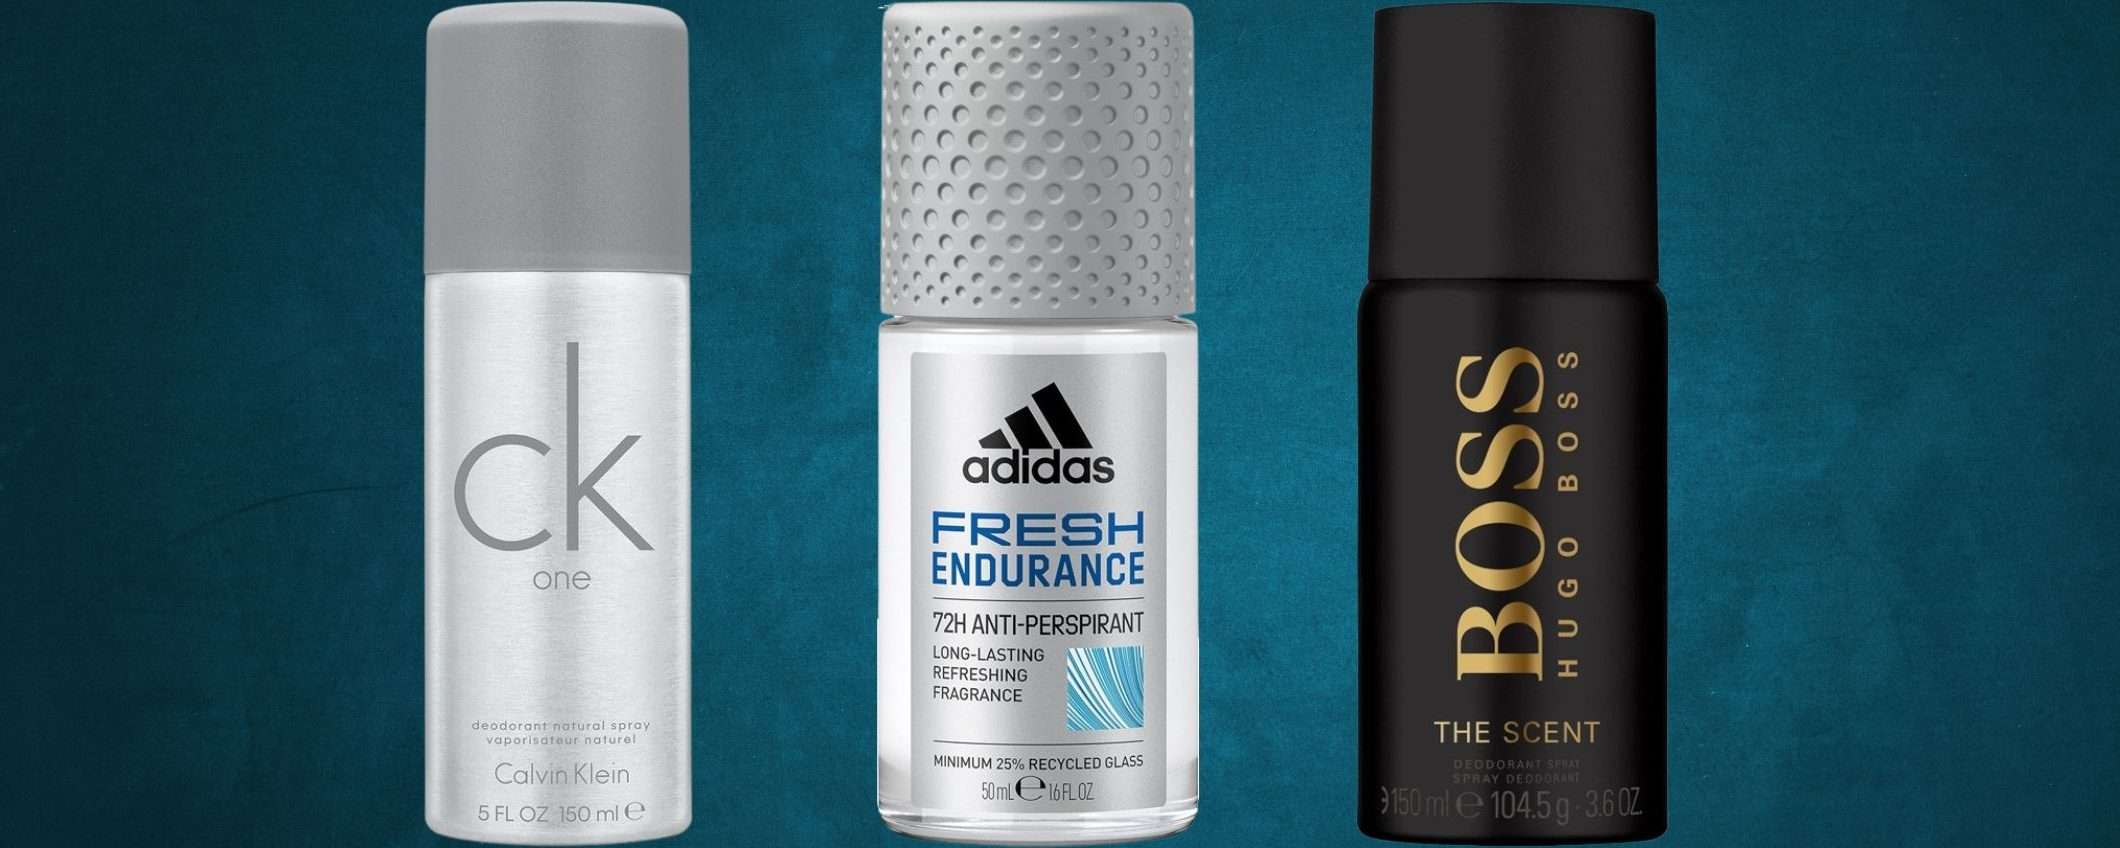 Deodoranti di marca da 2,59€ su Amazon: fragranze PREMIUM in svendita folle